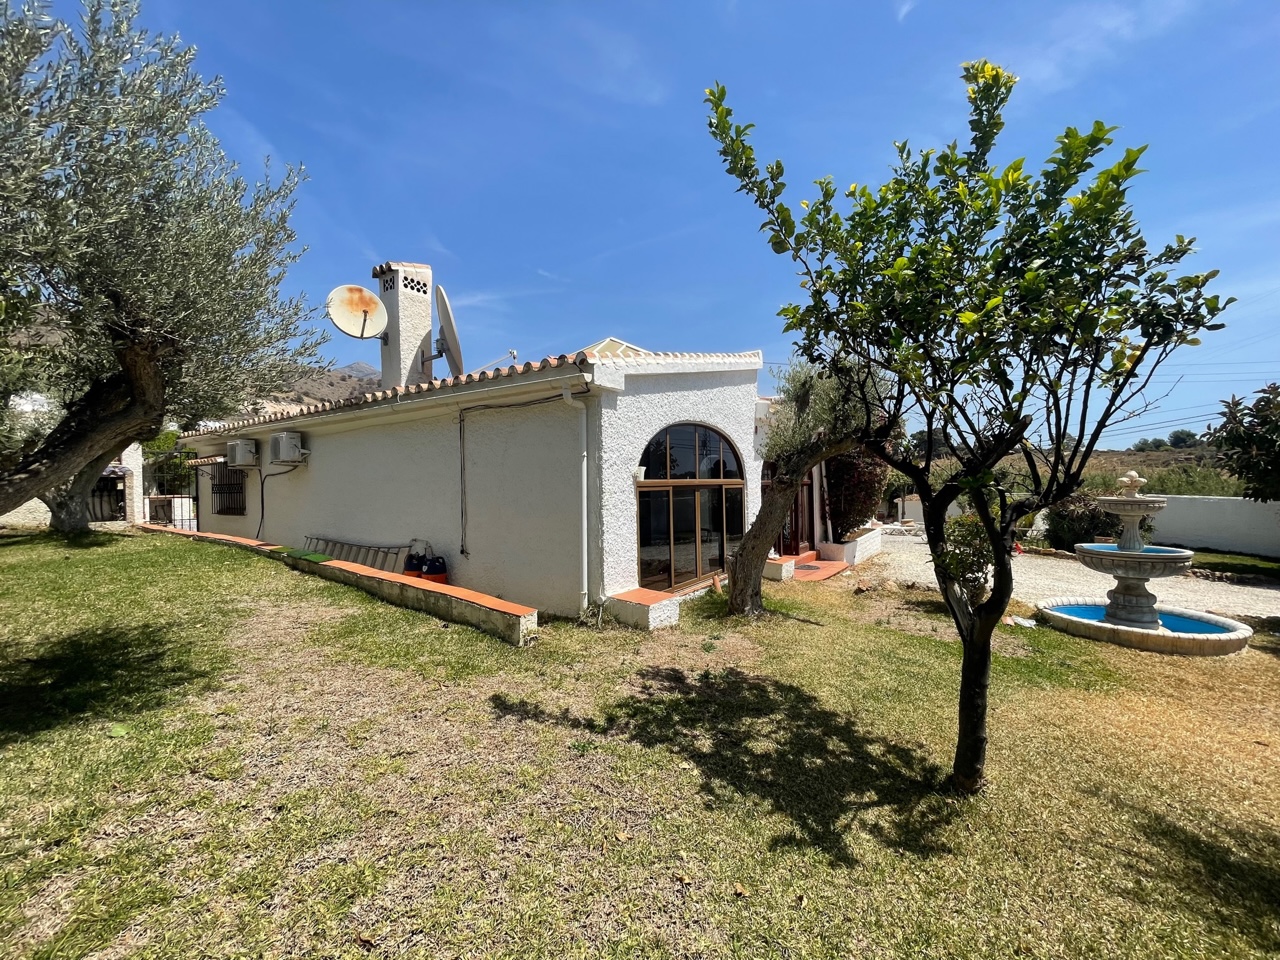 4BR Villa for sale in Fuente del Baden, Nerja